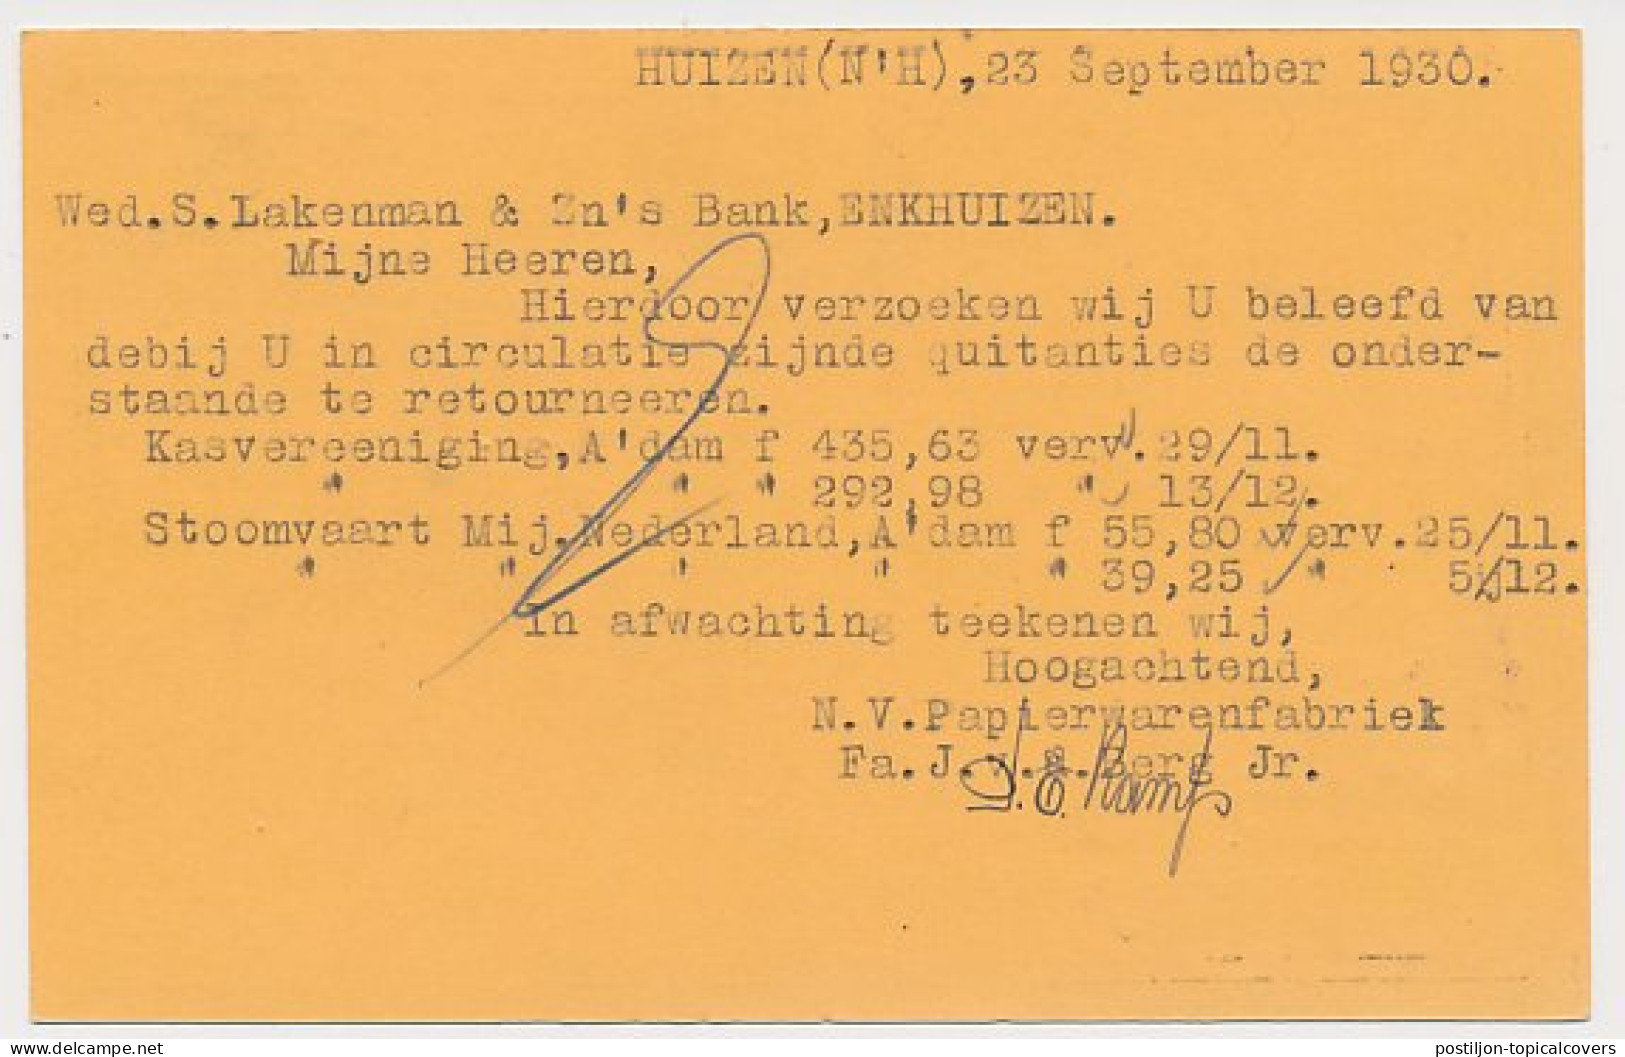 Firma Briefkaart Huizen 1930 - Papierwarenfabriek - Non Classés